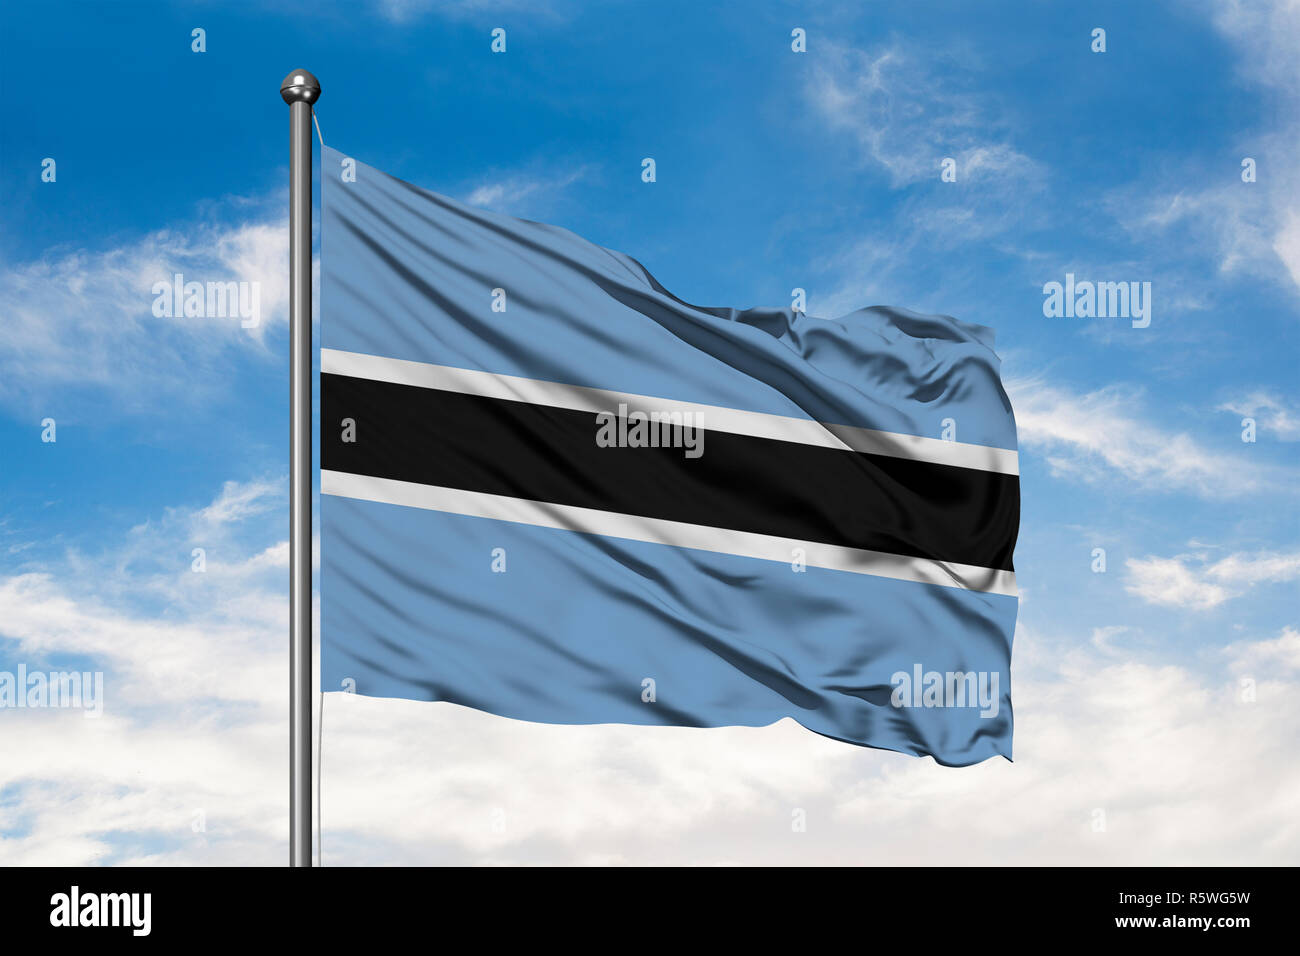 Bandera de Botswana ondeando en el viento contra un blanco azul cielo nublado. La bandera de Botsuana. Foto de stock